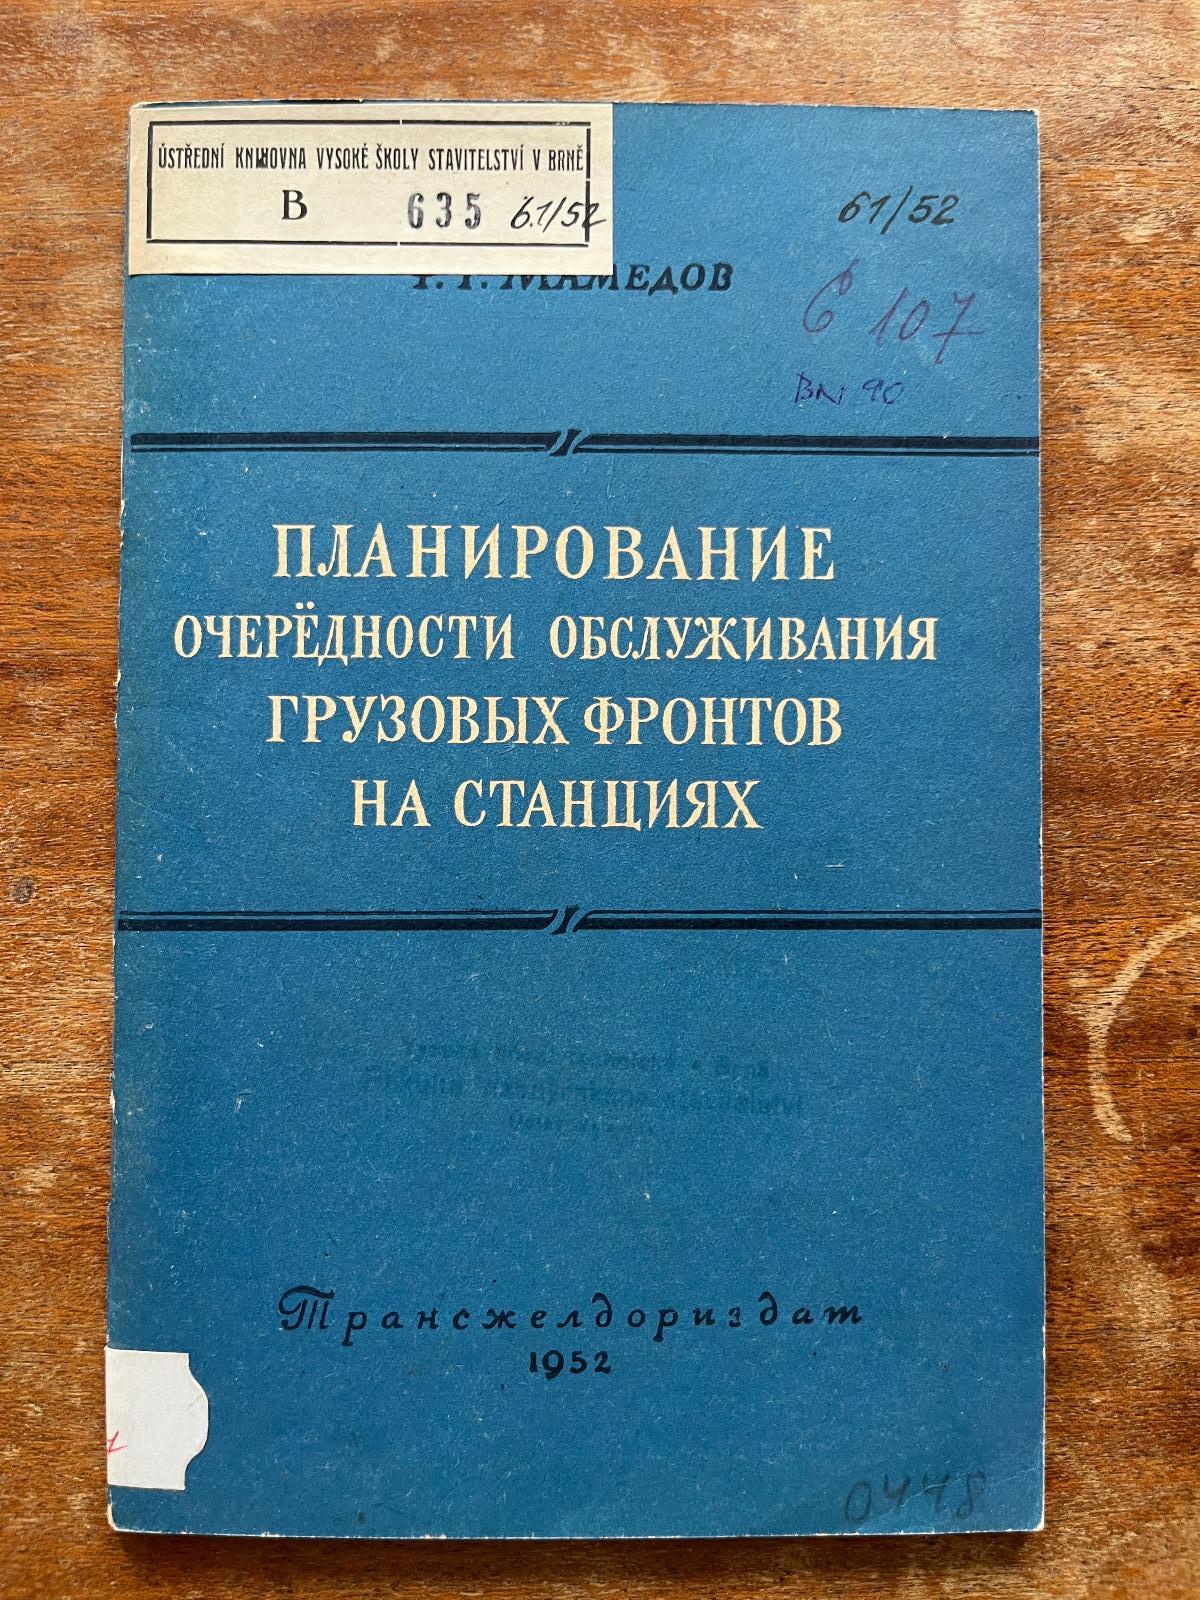 Cudzojazyčná železničná literatúra (1952) (j) - Knihy